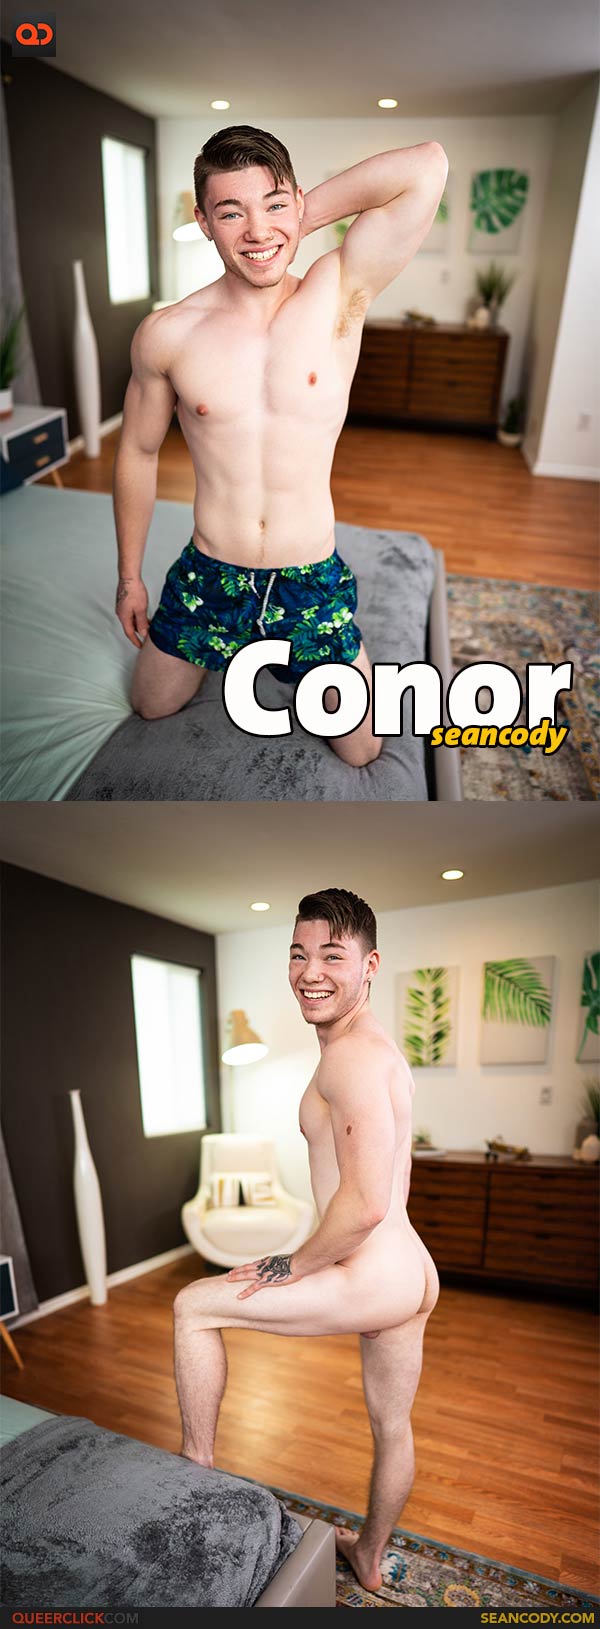 Sean Cody: Conor